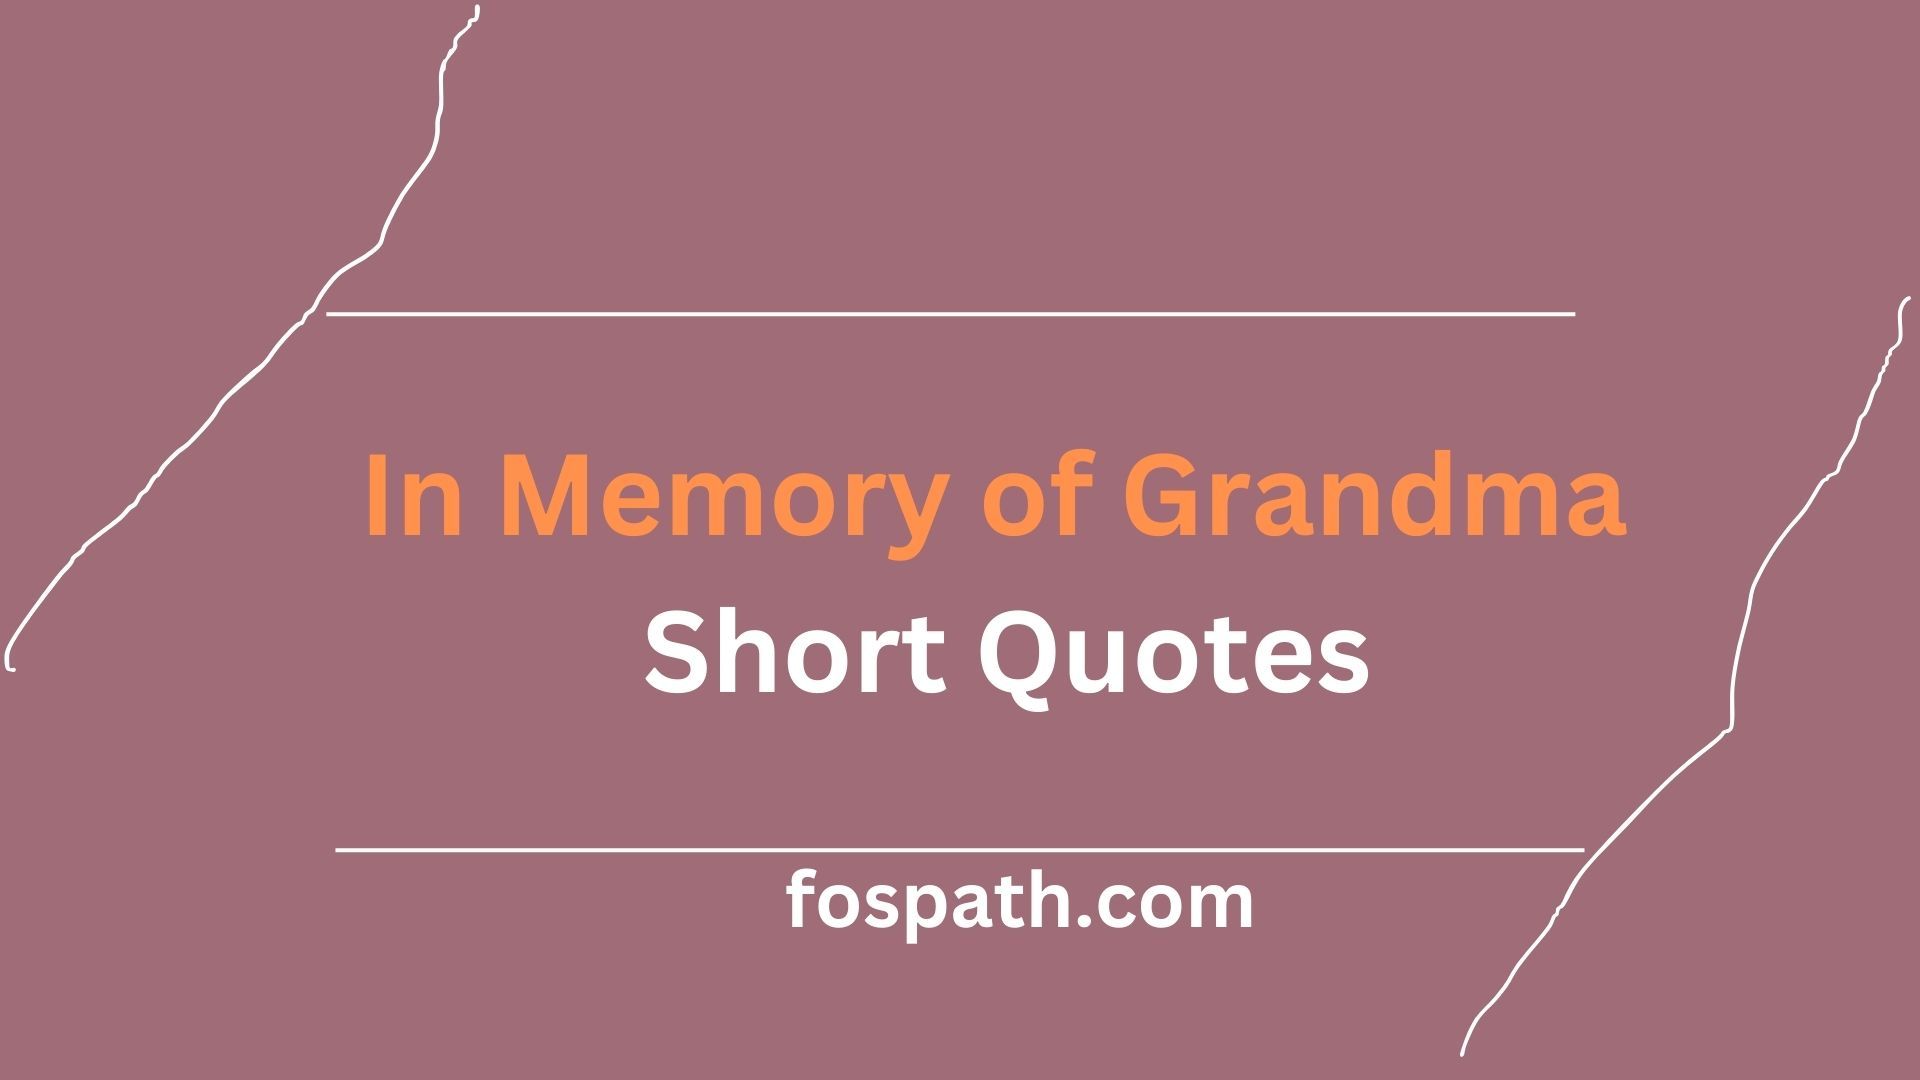 In Memory of Grandma Short Quotes